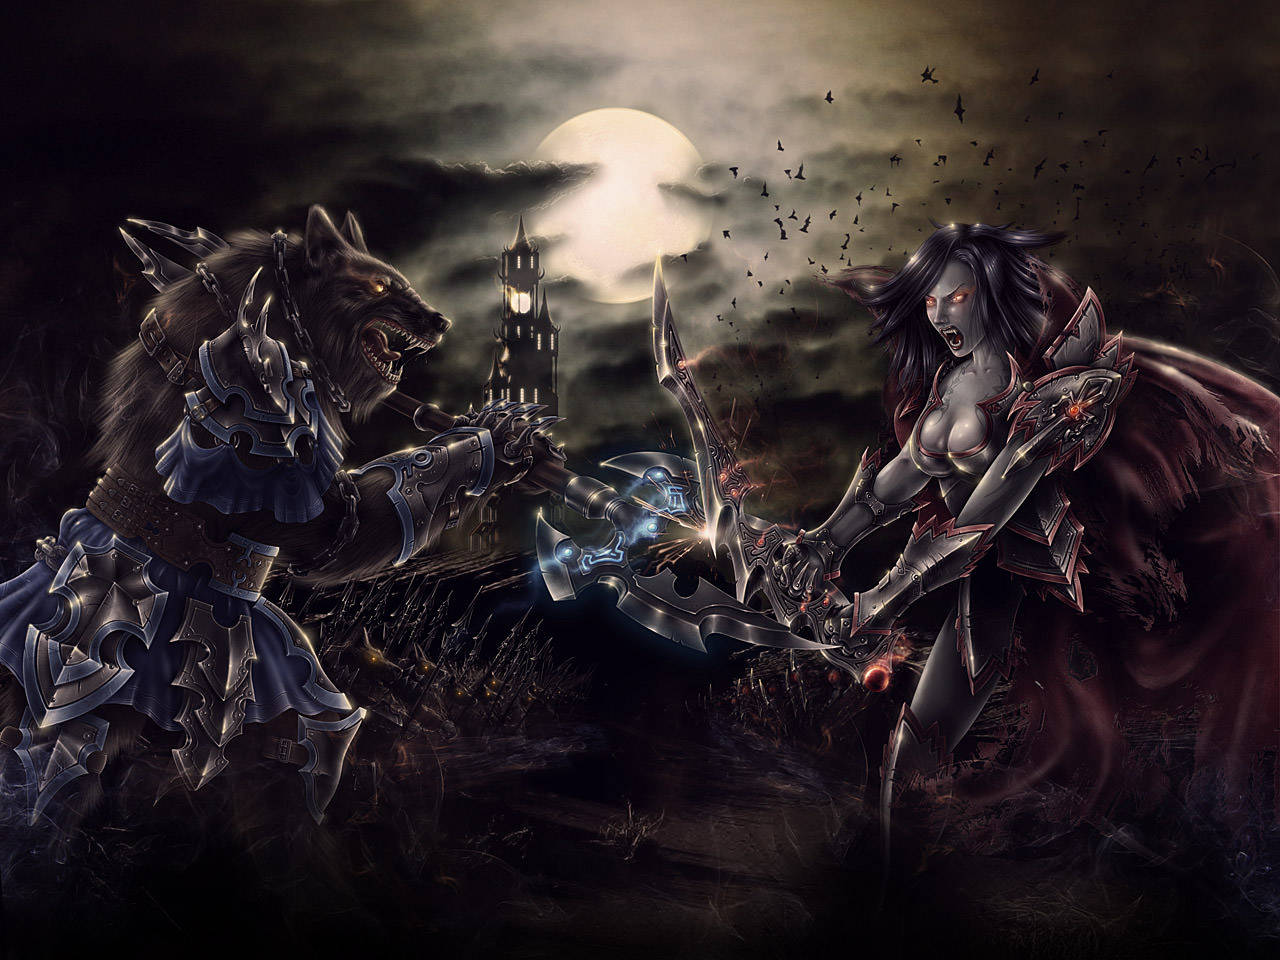 Battle Of The Bloodlines: Vampire Vs Werewolf